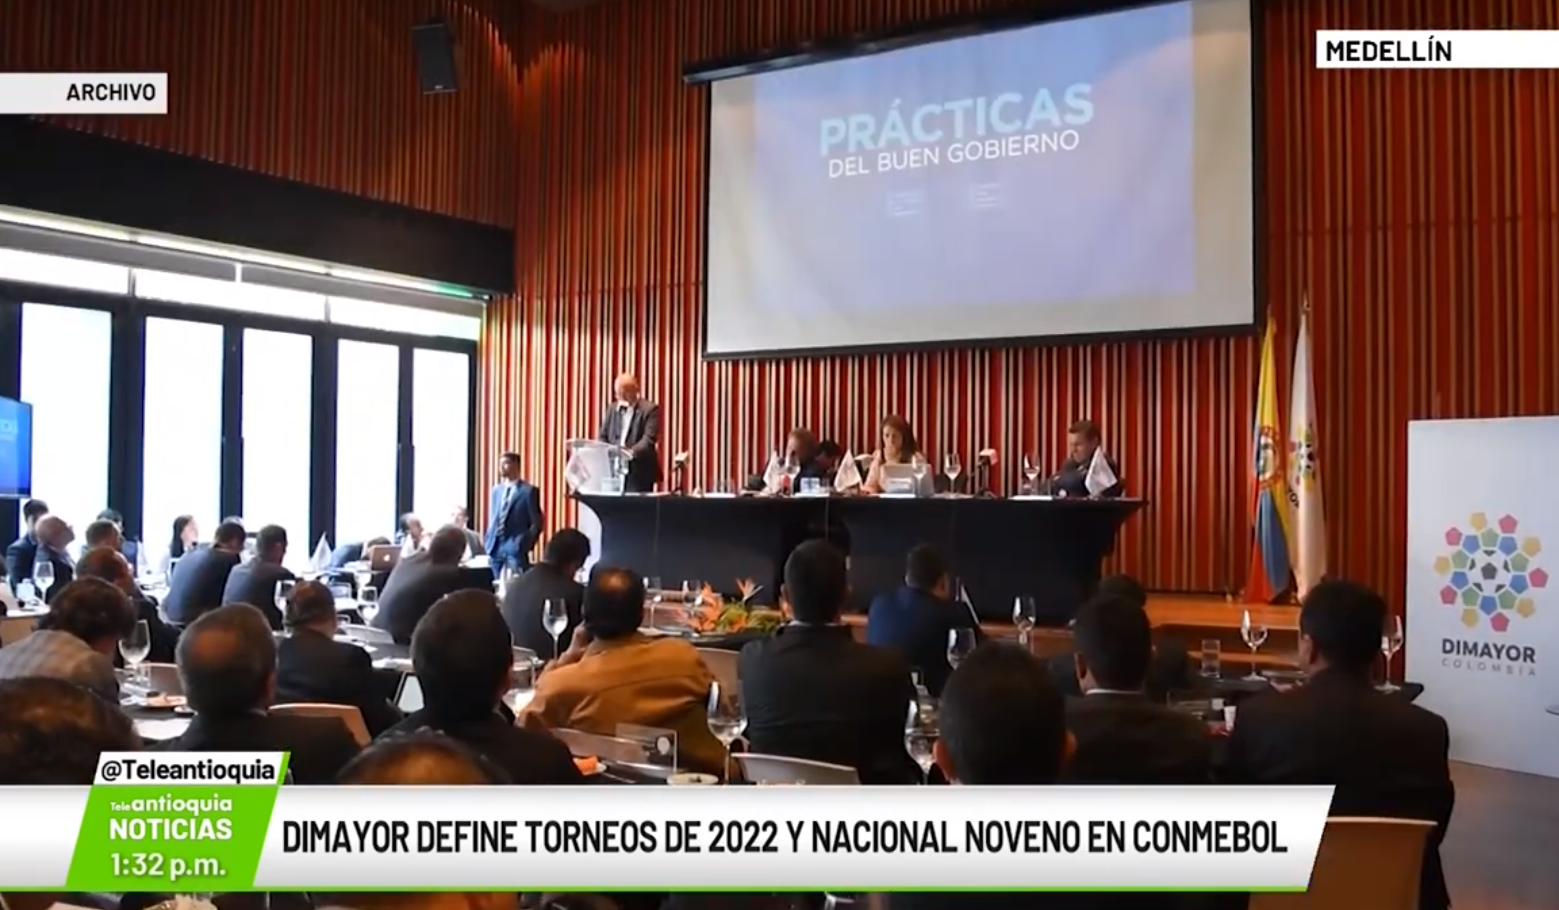 Dimayor define torneos de 2022 y nacional noveno en Conmebol